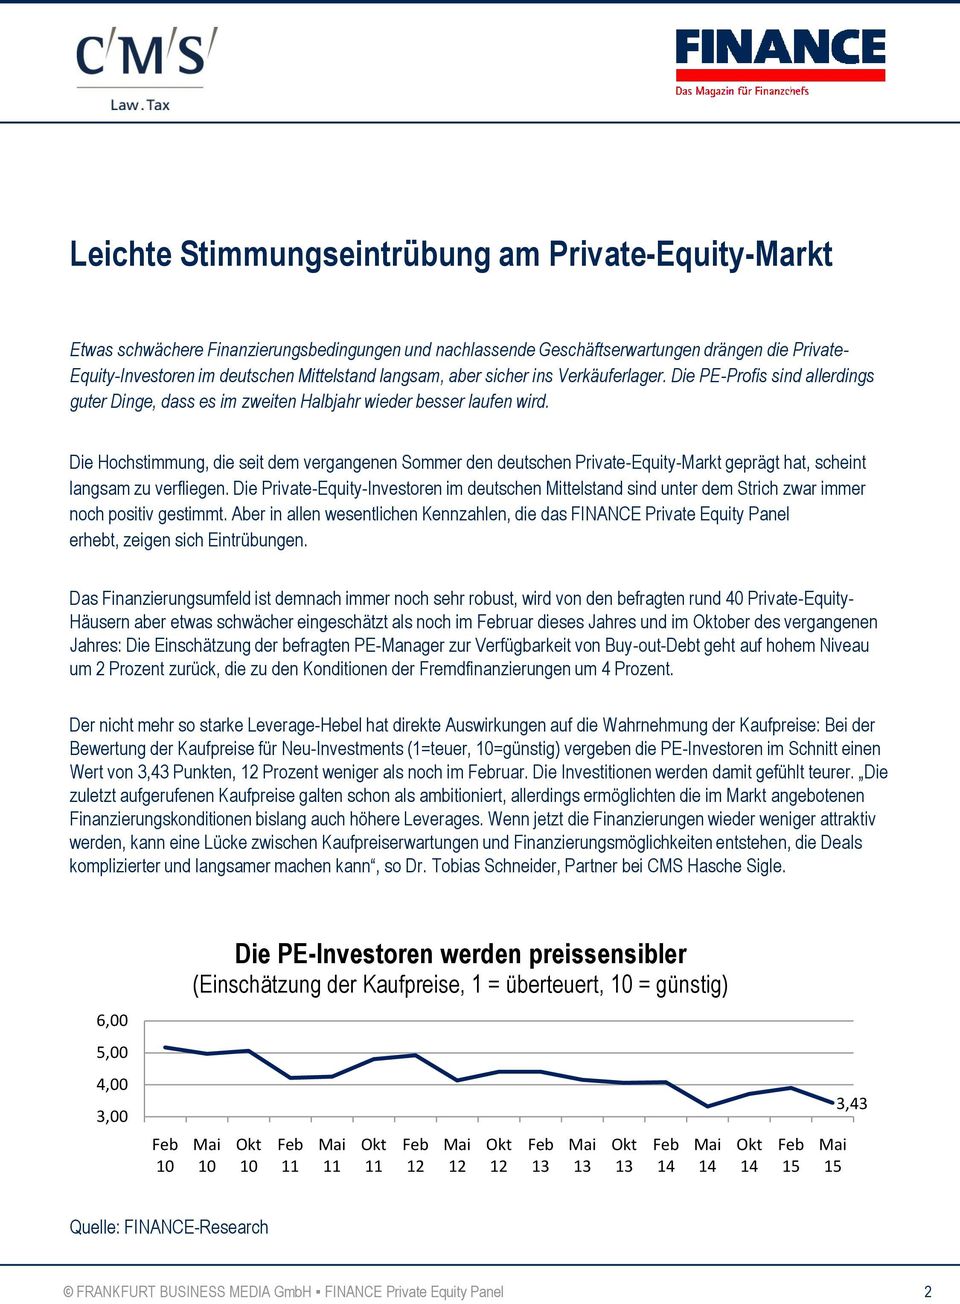 Die Hochstimmung, die seit dem vergangenen Sommer den deutschen Private-Equity-Markt geprägt hat, scheint langsam zu verfliegen.